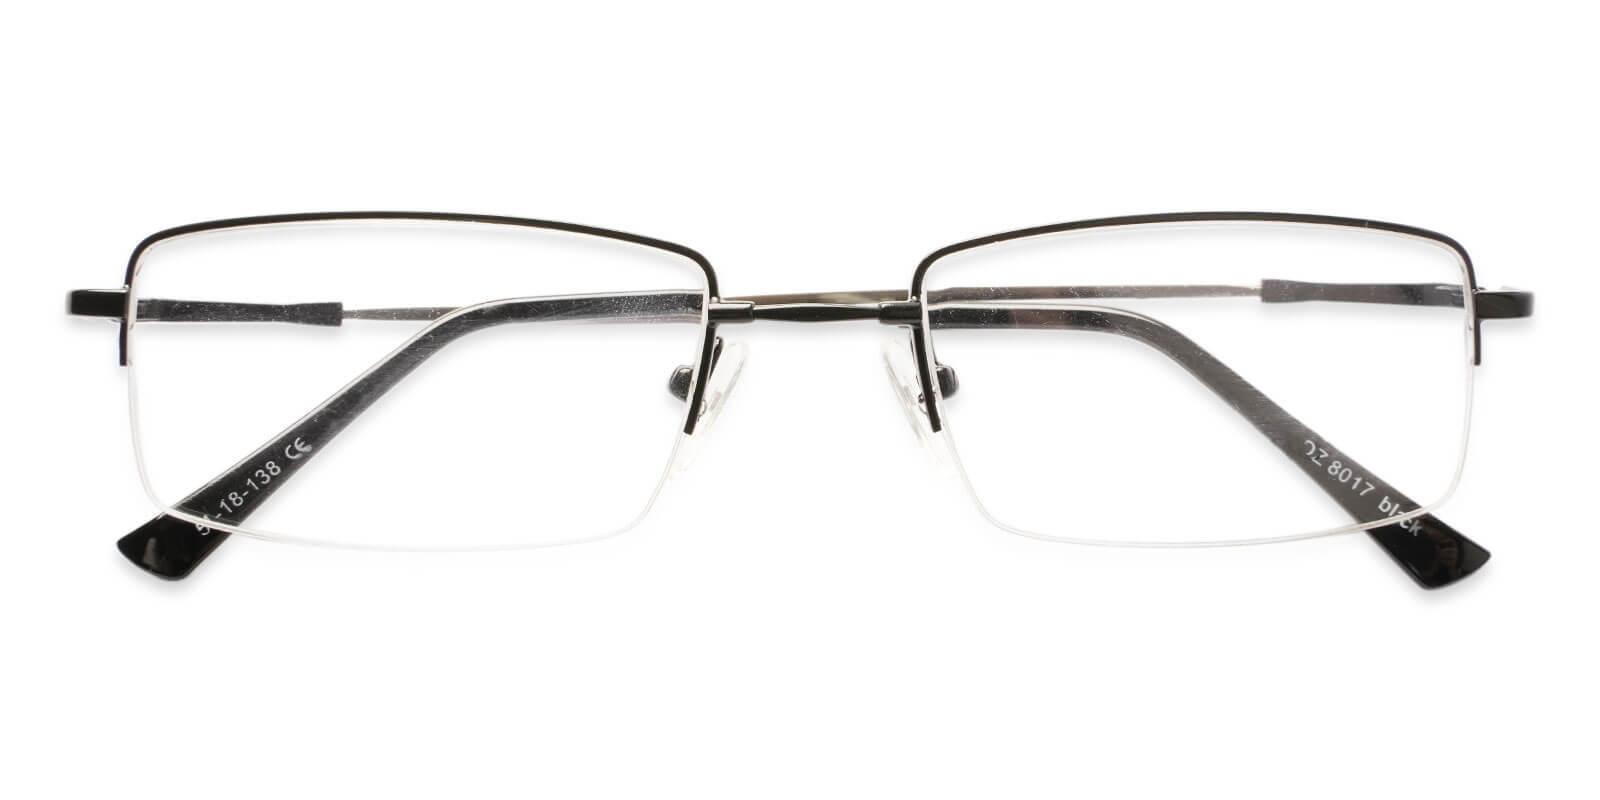 Ezra Black Metal Eyeglasses , NosePads Frames from ABBE Glasses